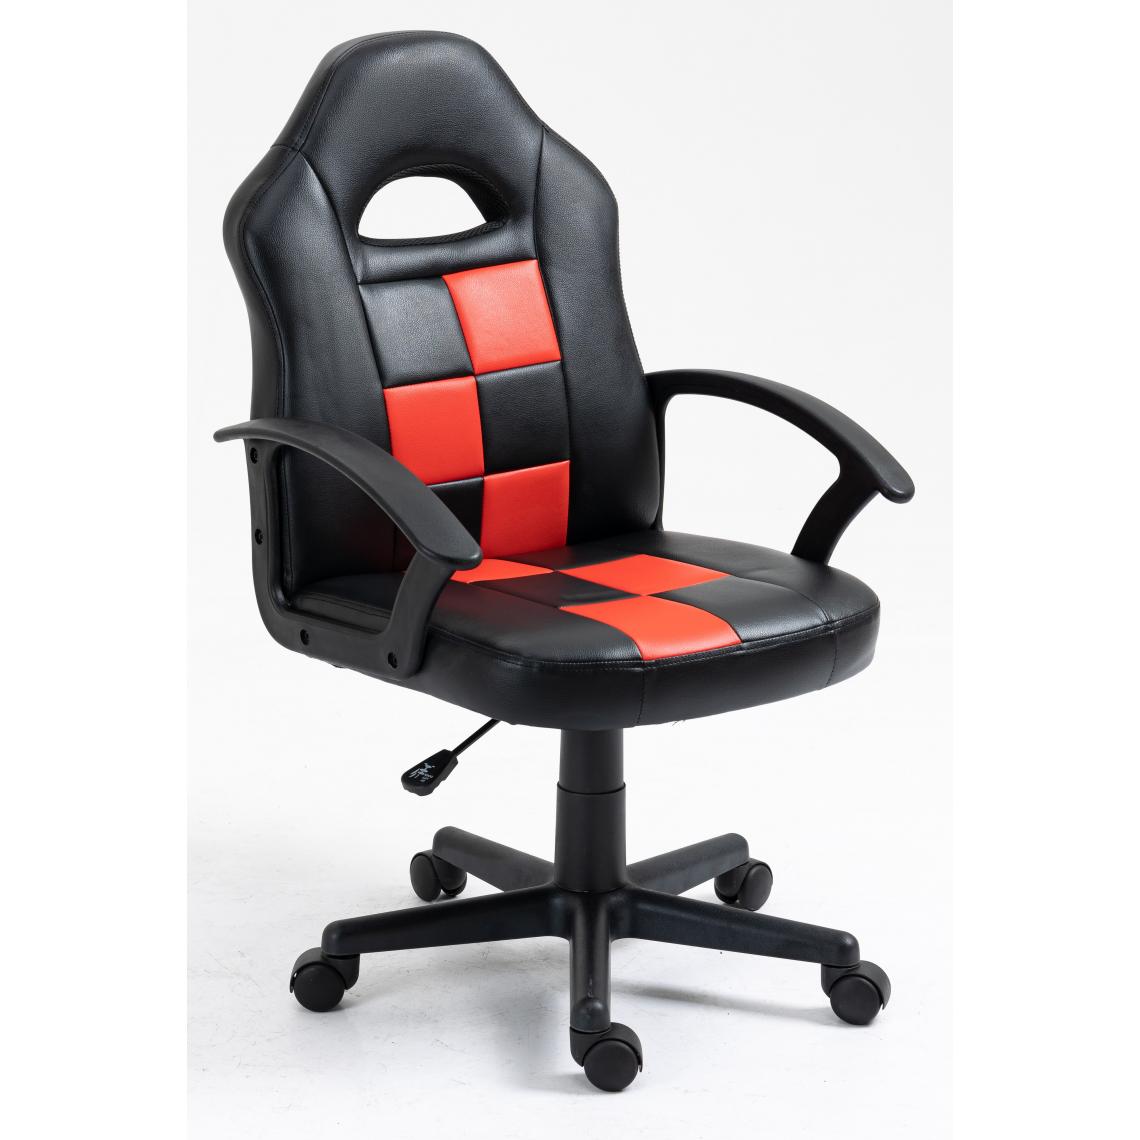 Nordlys - Nordlys - Chaise de Bureau Gaming Ergonomique Reglable avec Accoudoirs Base Nylon Simili Rouge - Bureaux